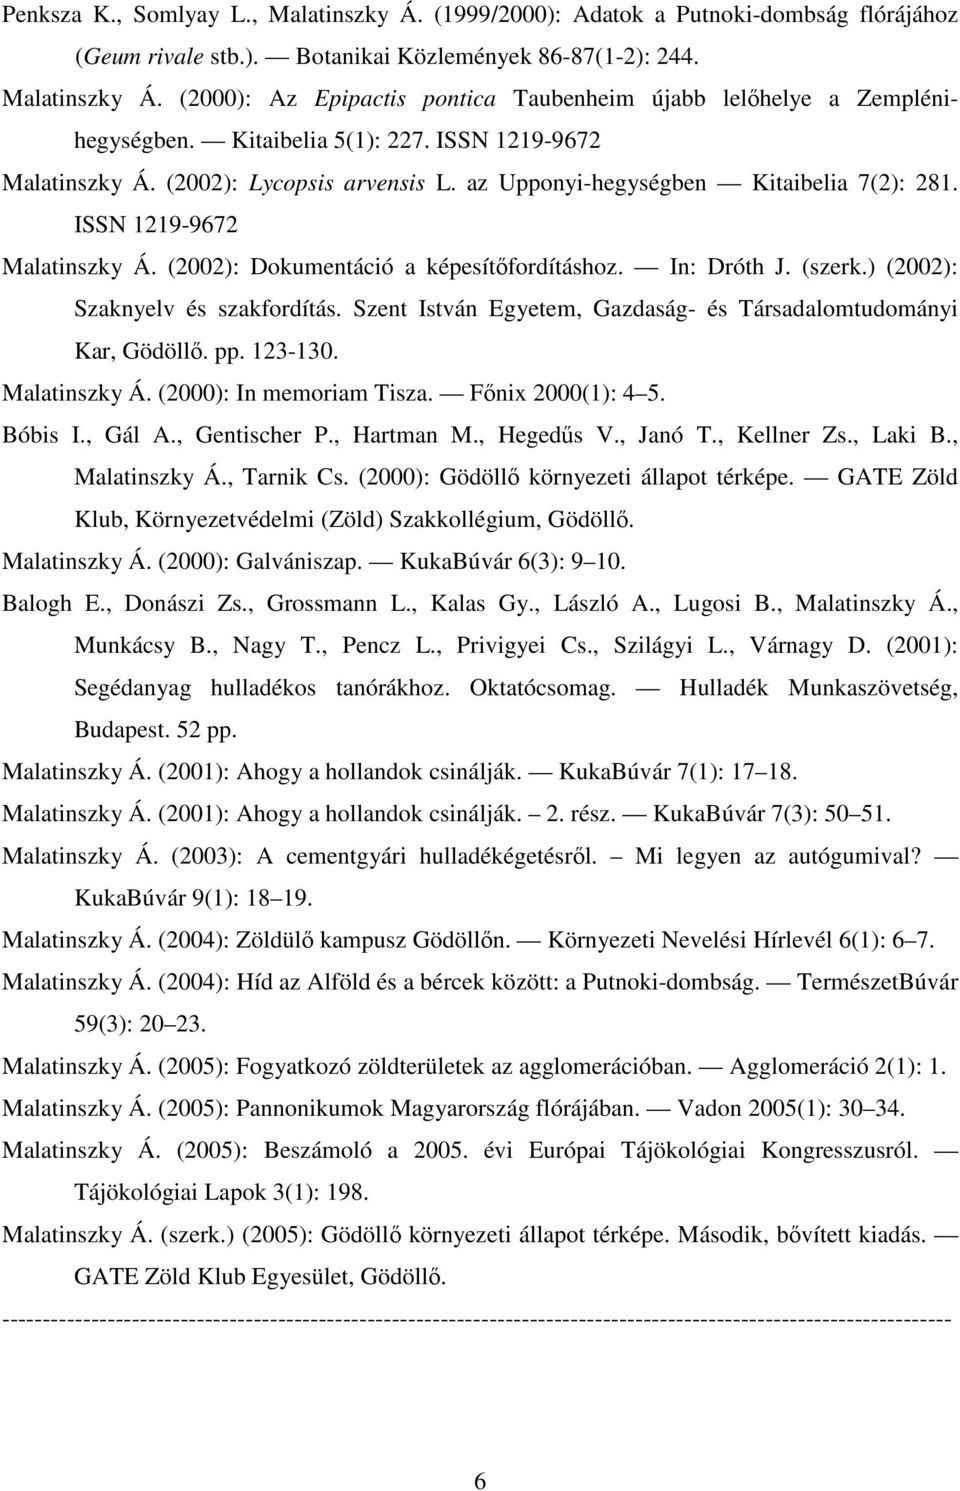 In: Dróth J. (szerk.) (2002): Szaknyelv és szakfordítás. Szent István Egyetem, Gazdaság- és Társadalomtudományi Kar, Gödöllő. pp. 123-130. Malatinszky Á. (2000): In memoriam Tisza. Főnix 2000(1): 4 5.